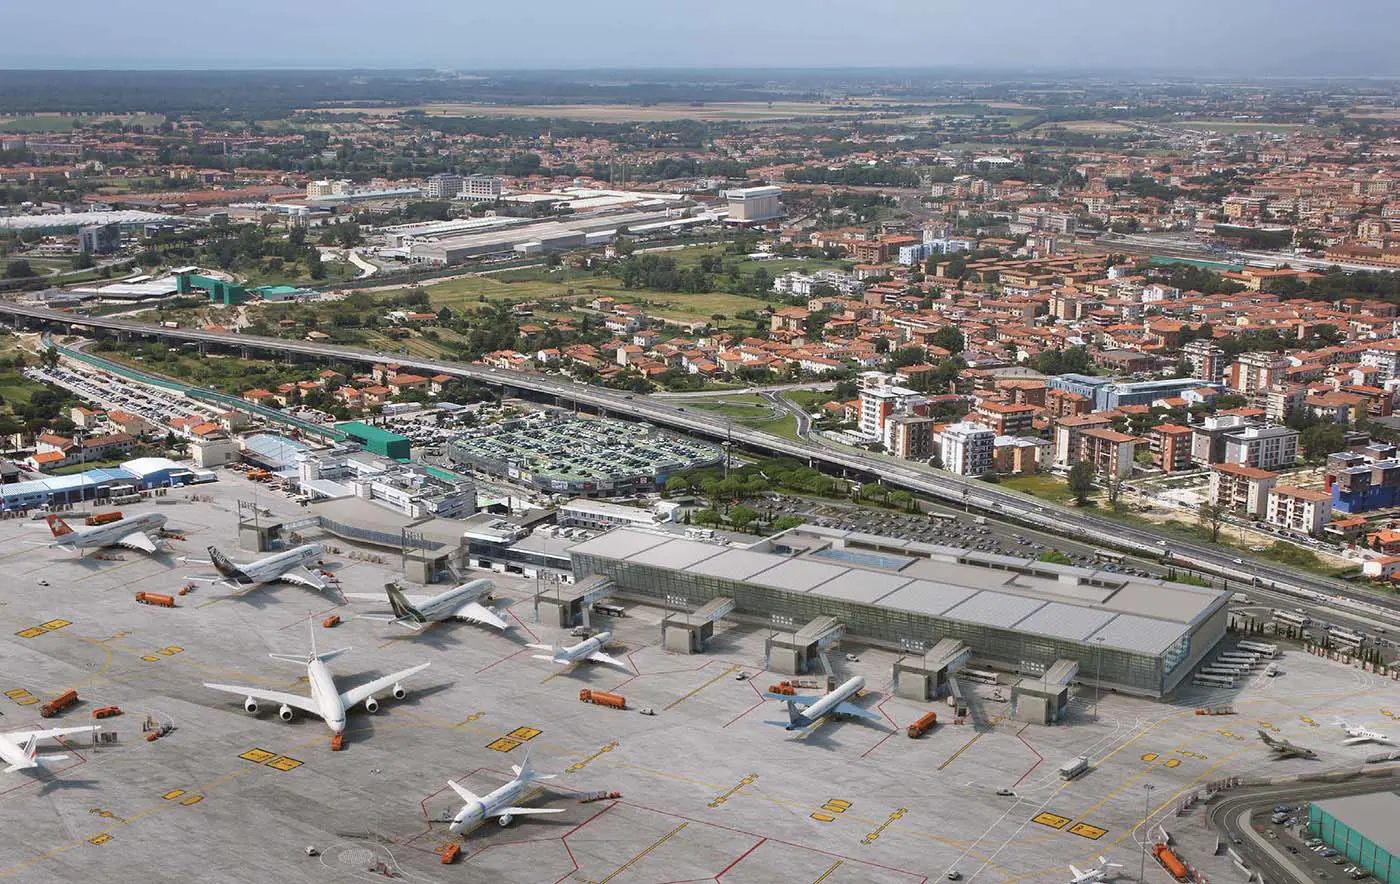 Aéroport international de Pise - Galileo Galilei